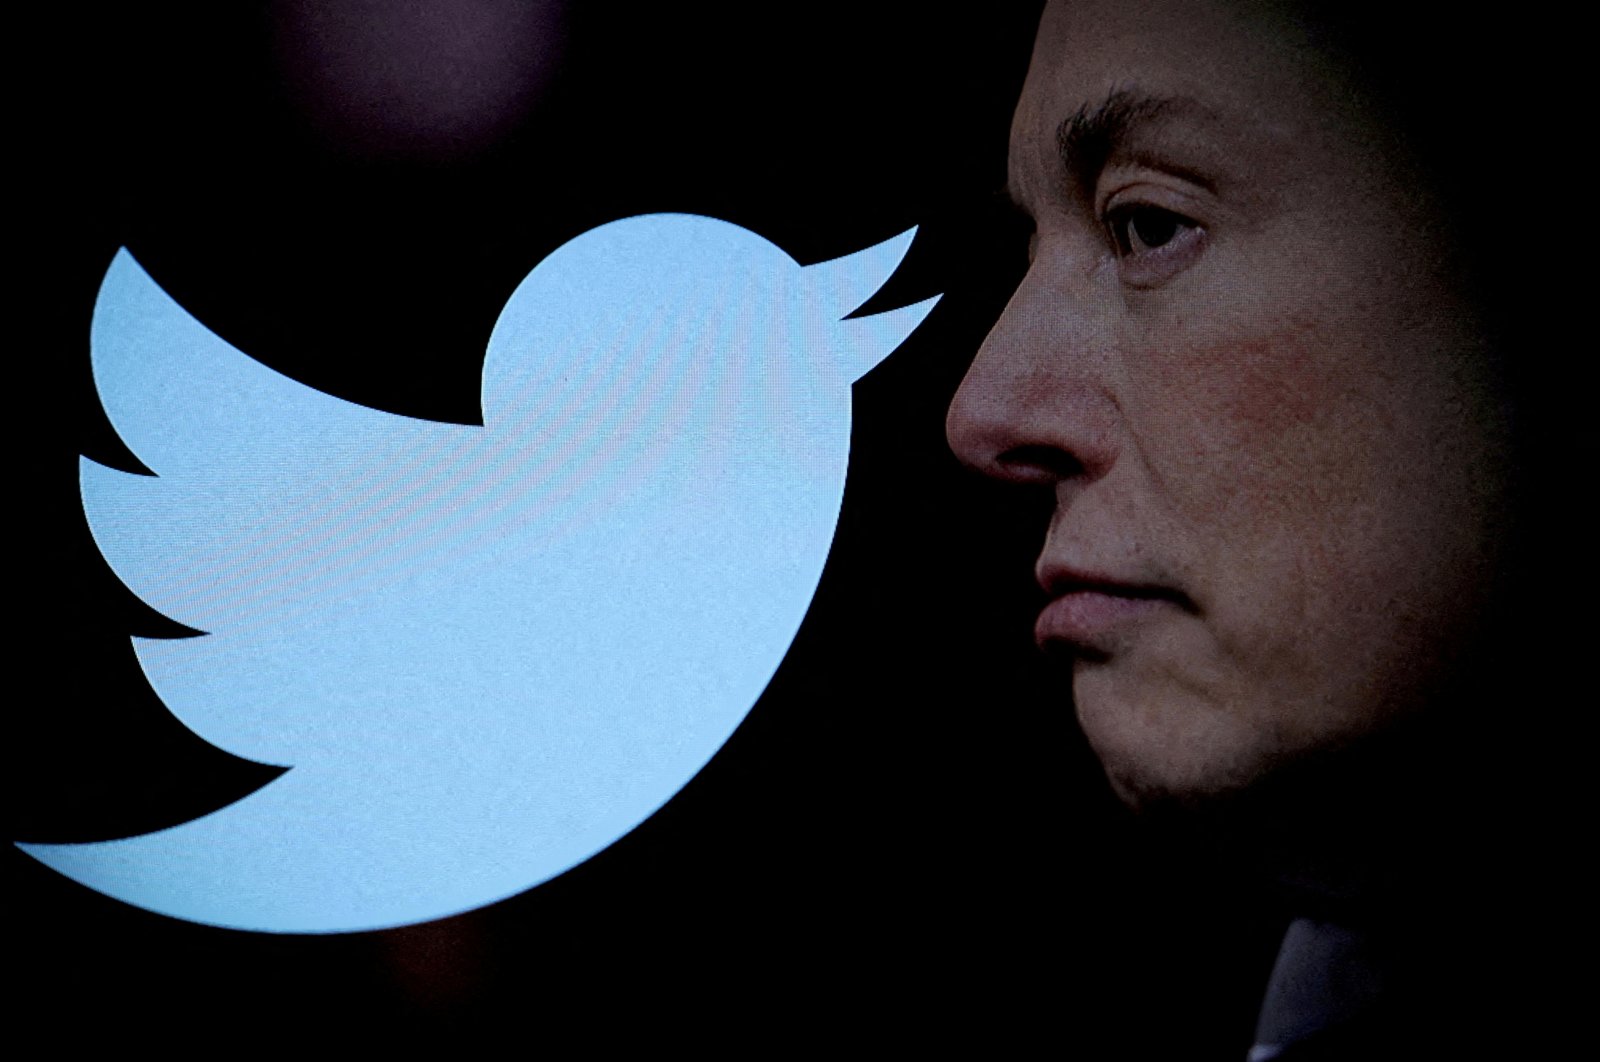 Ujaran kebencian melonjak setelah Elon Musk mengambil alih Twitter: Study